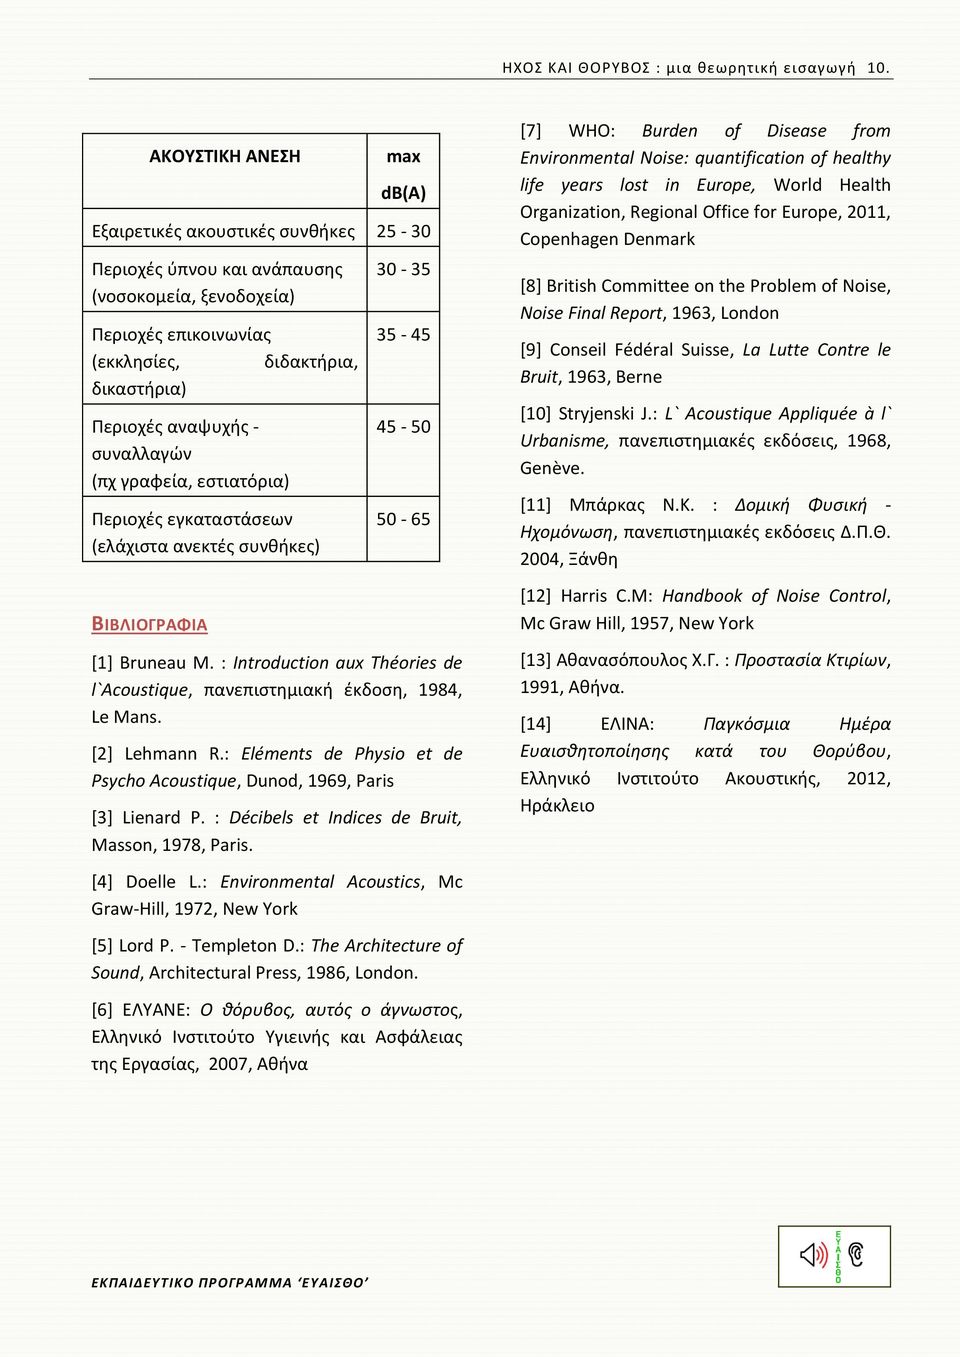 αναψυχής - συναλλαγών (πχ γραφεία, εστιατόρια) Περιοχές εγκαταστάσεων (ελάχιστα ανεκτές συνθήκες) 30-35 35-45 45-50 50-65 [1] Bruneau M.